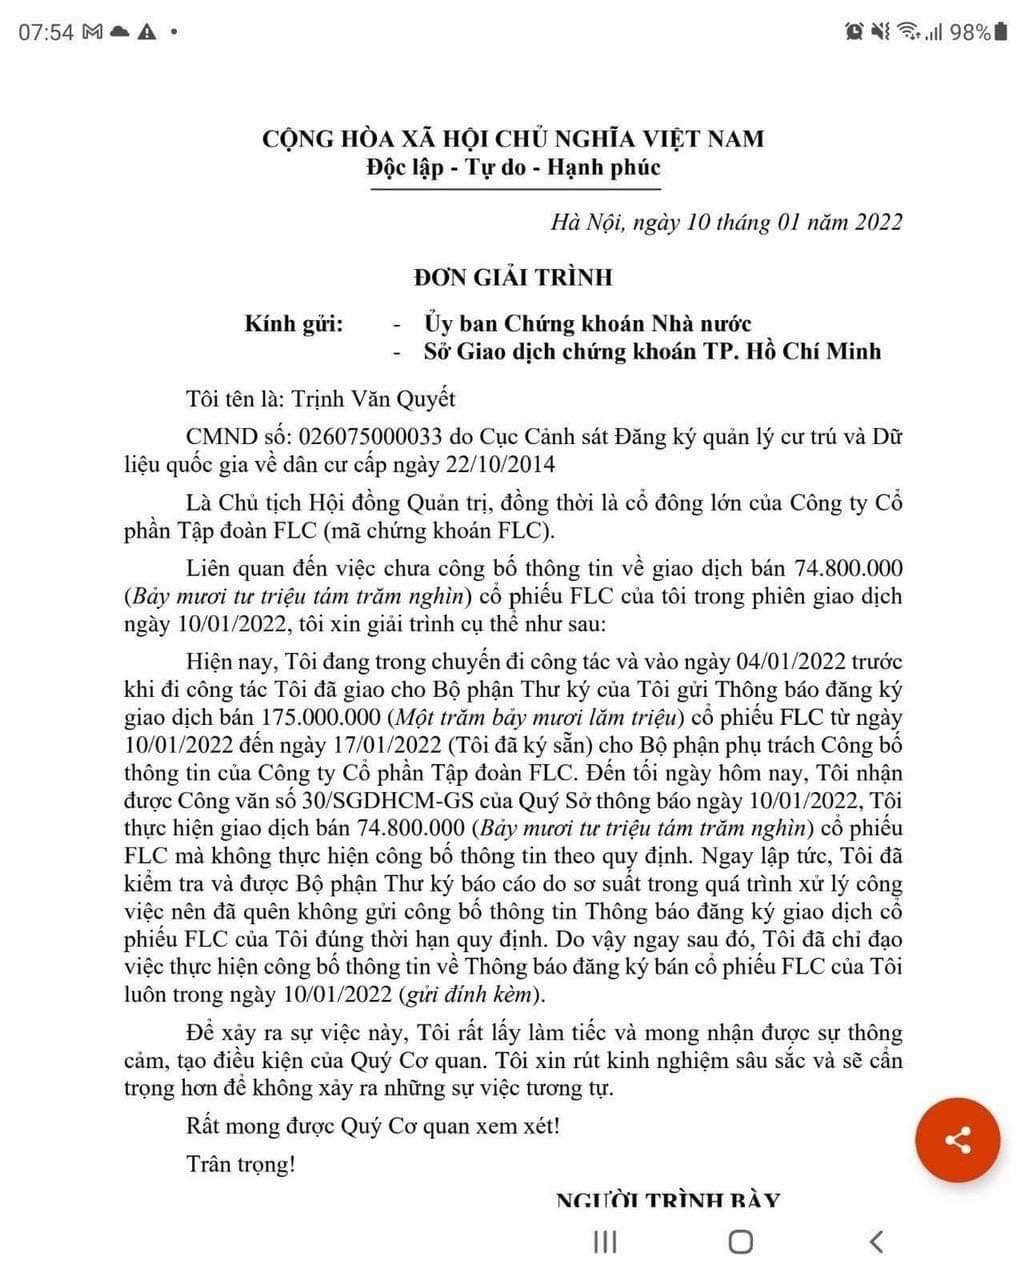 Văn bản hỏa tốc chấn động, ông Trịnh Văn Quyết bán 'chui' gần 75 triệu cổ phiếu